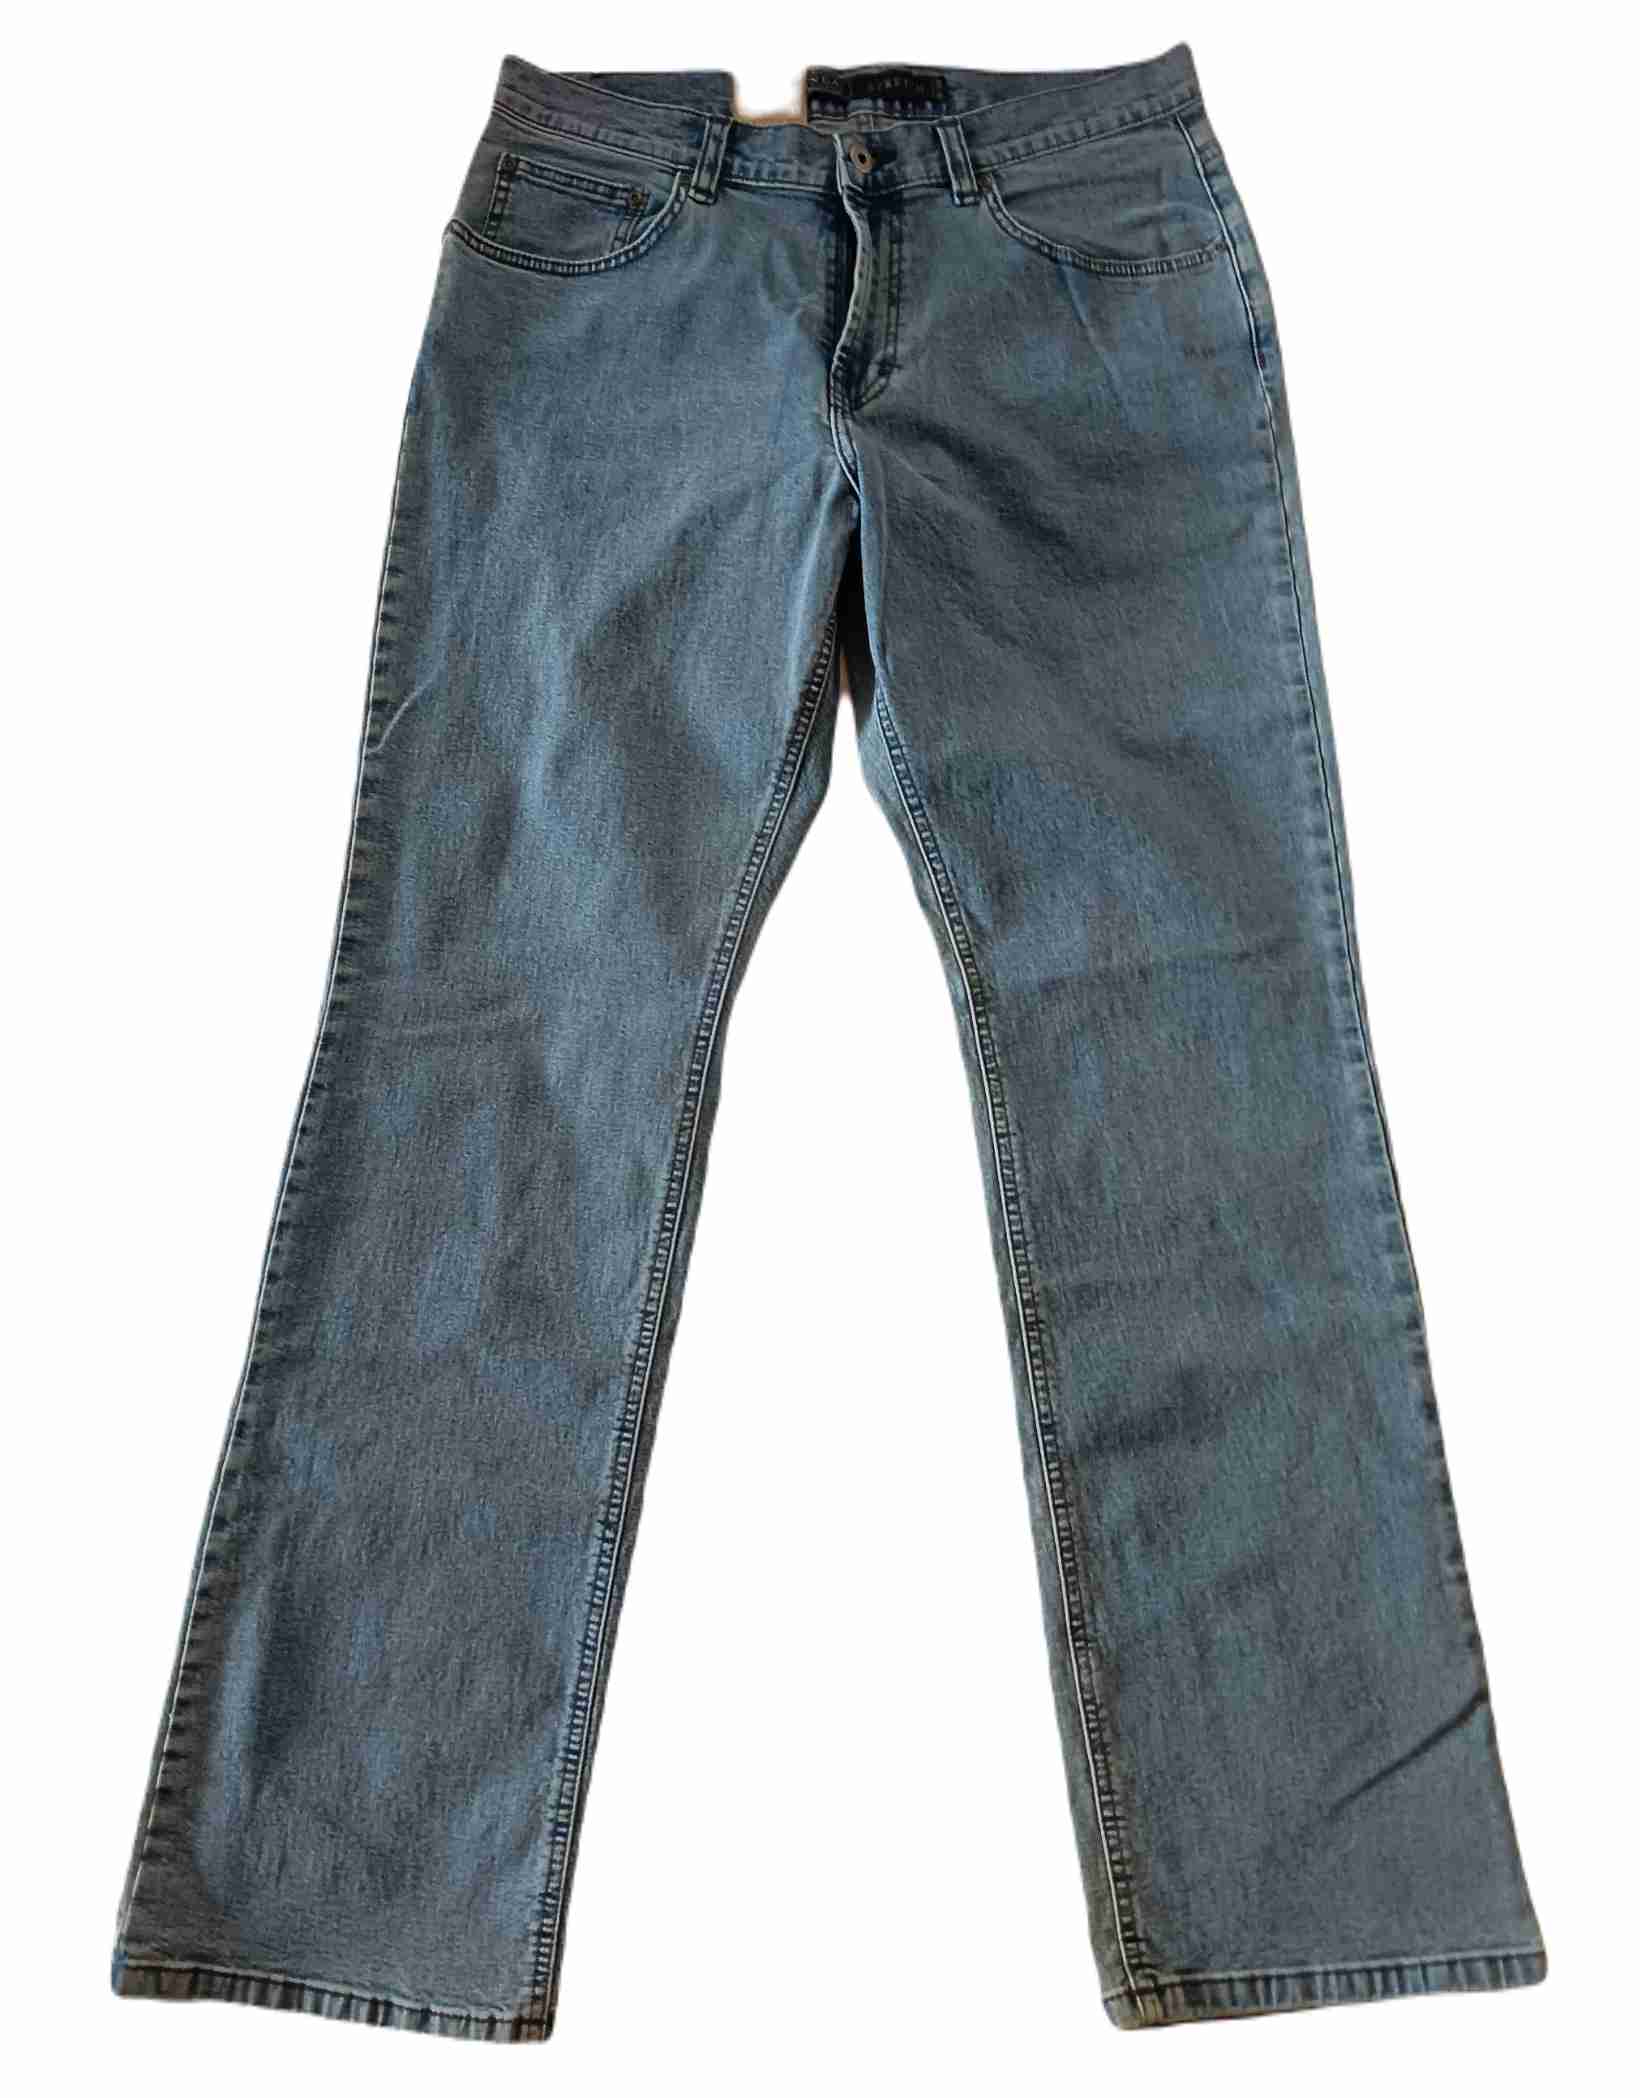 Pánské džíny 36/32 - XL